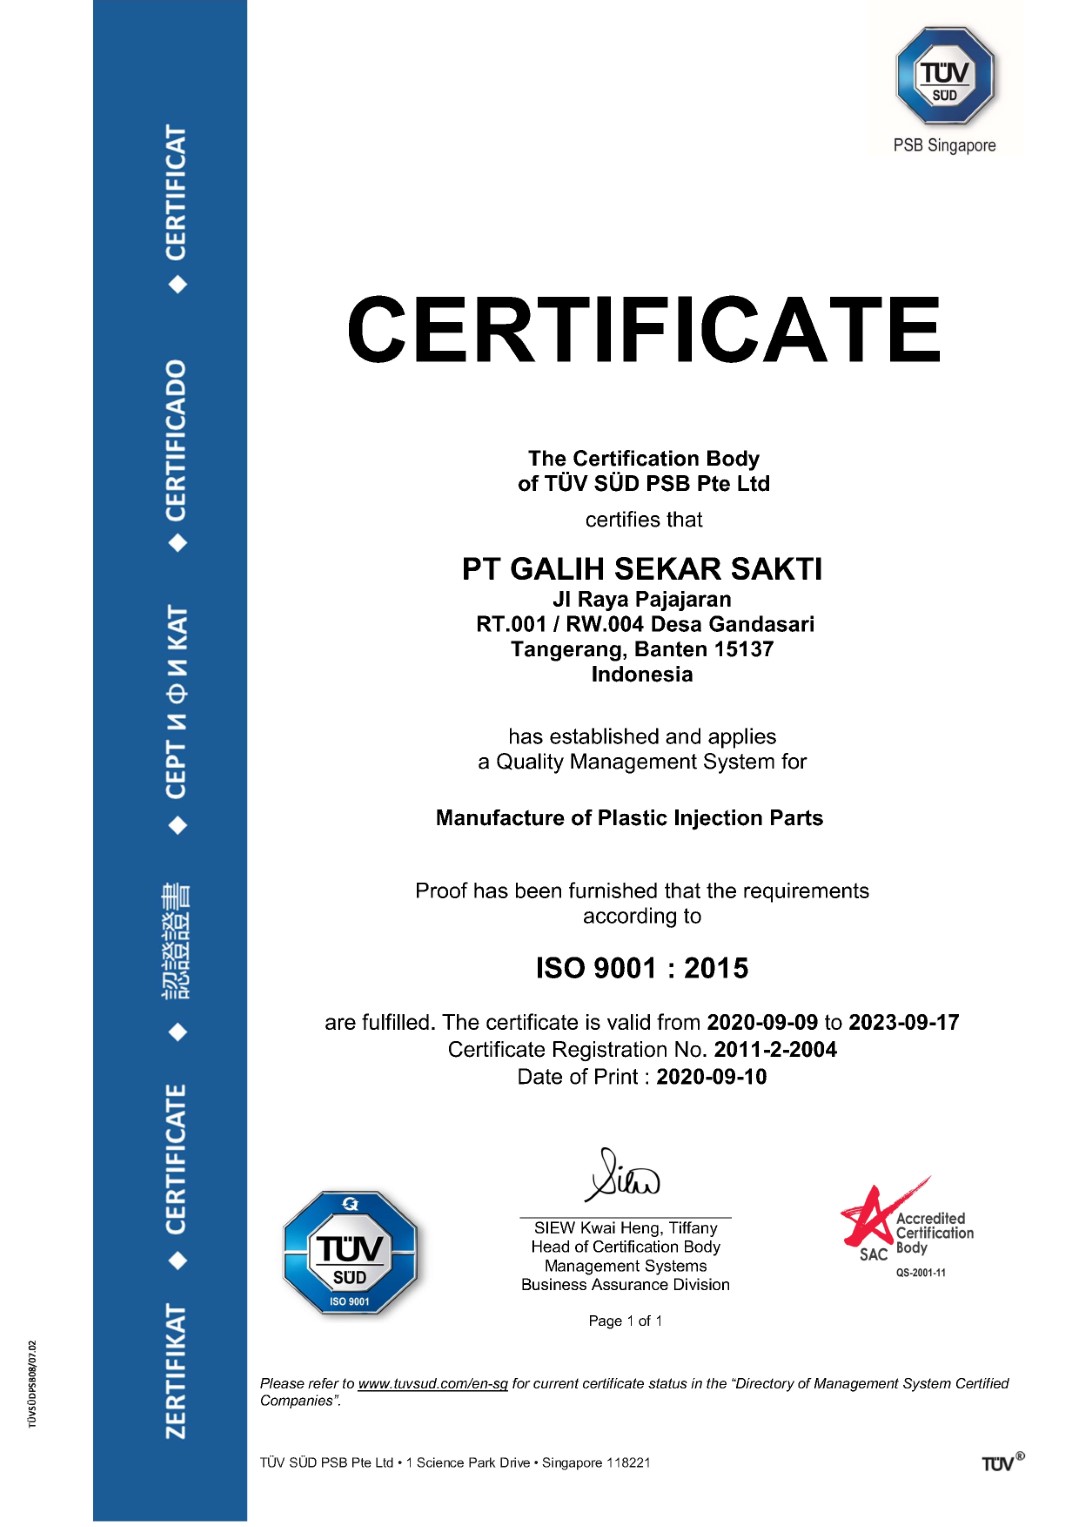 Certificate ISO 9001-PT GALIH SEKAR SAKTI 2020 (Large)